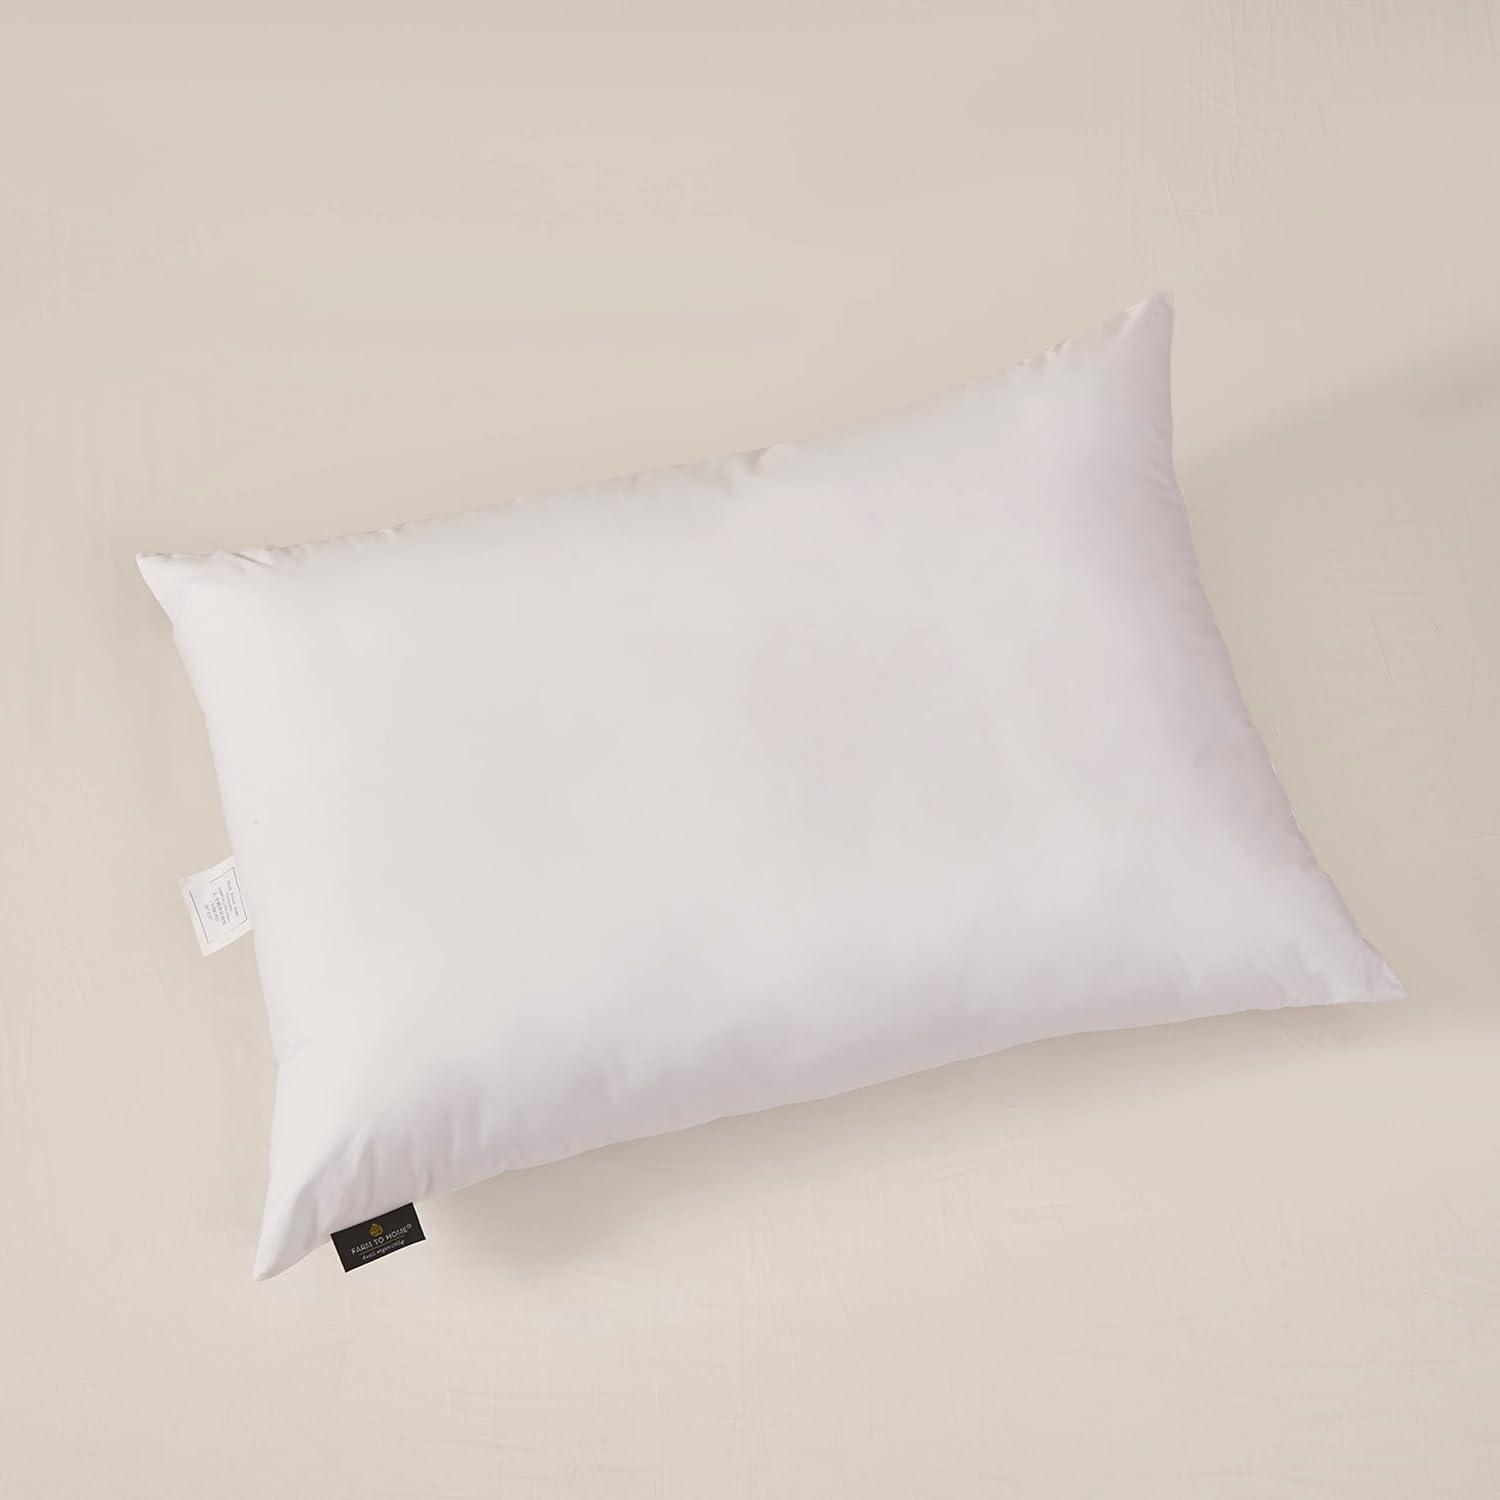 Farm to Home King-Size Organic Cotton & Polyester Pillow Set, White